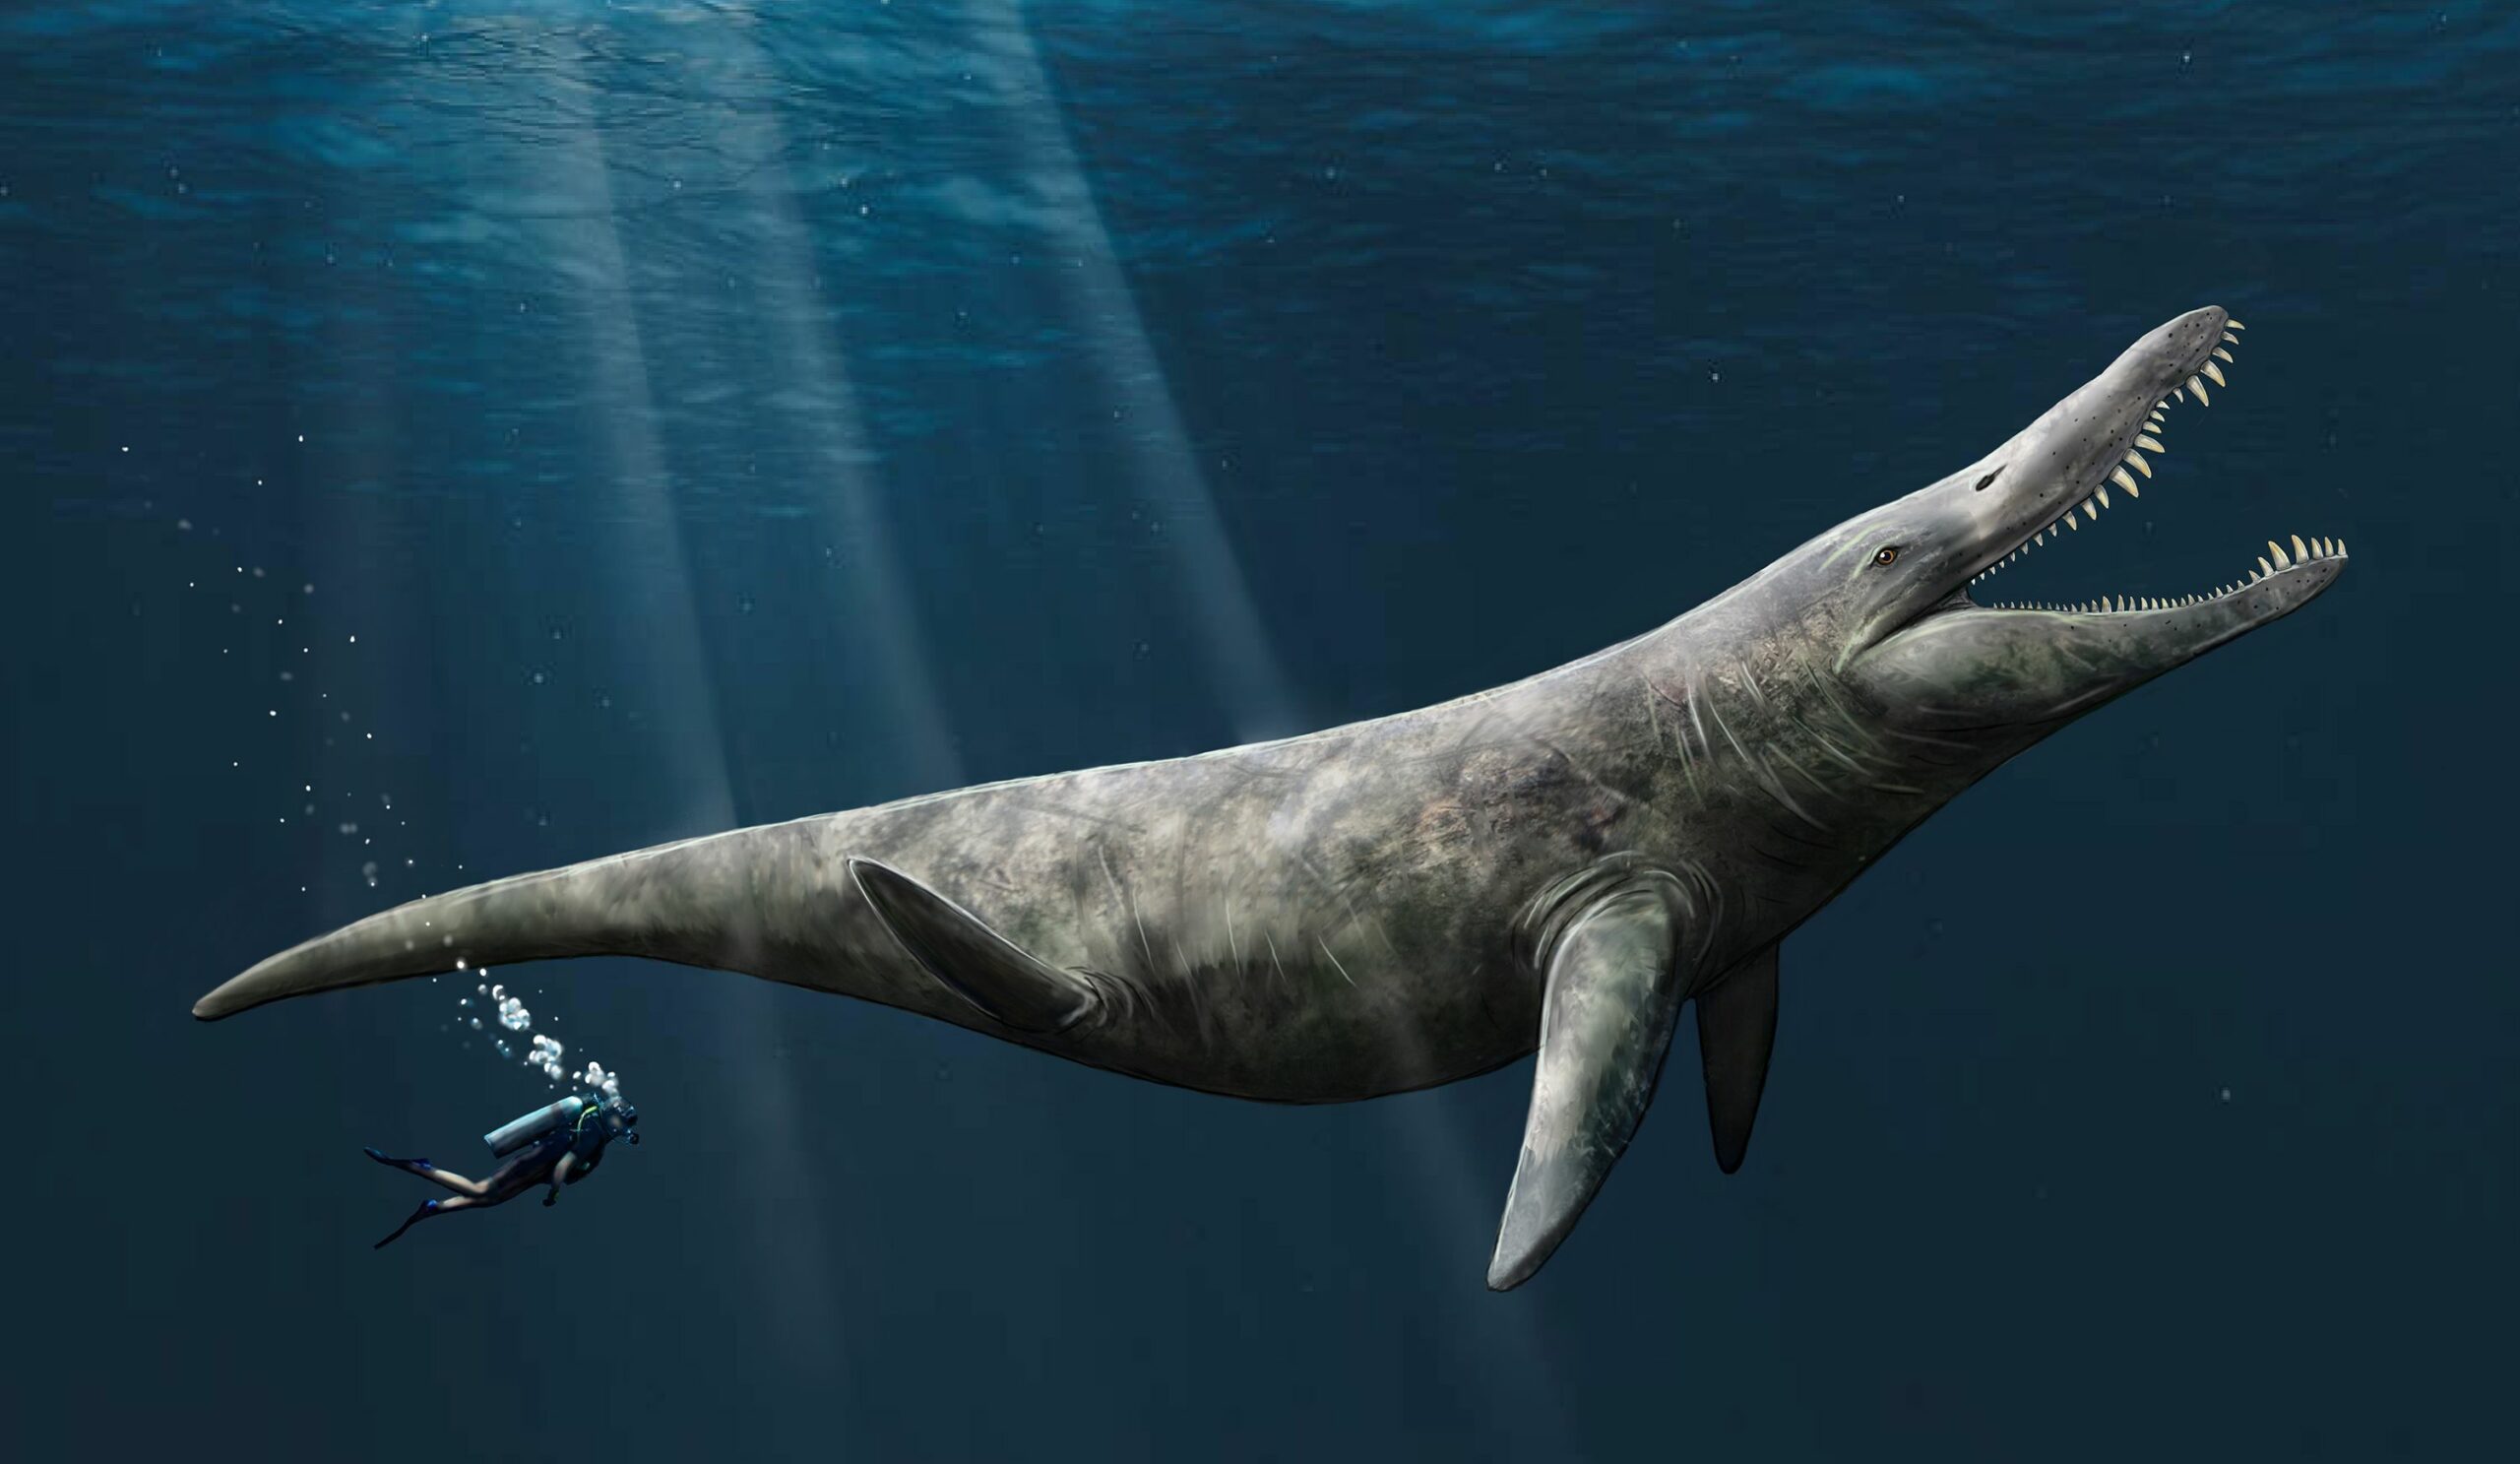 Përshtypja e një artisti për pliosaurin. Paleontologët e Universitetit të Portsmouth kanë zbuluar prova që sugjerojnë se pliosaurët, të lidhur ngushtë me Liopleurodon, mund të kishin arritur deri në 14.4 metra gjatësi, dyfishi i madhësisë së një balene vrasëse.